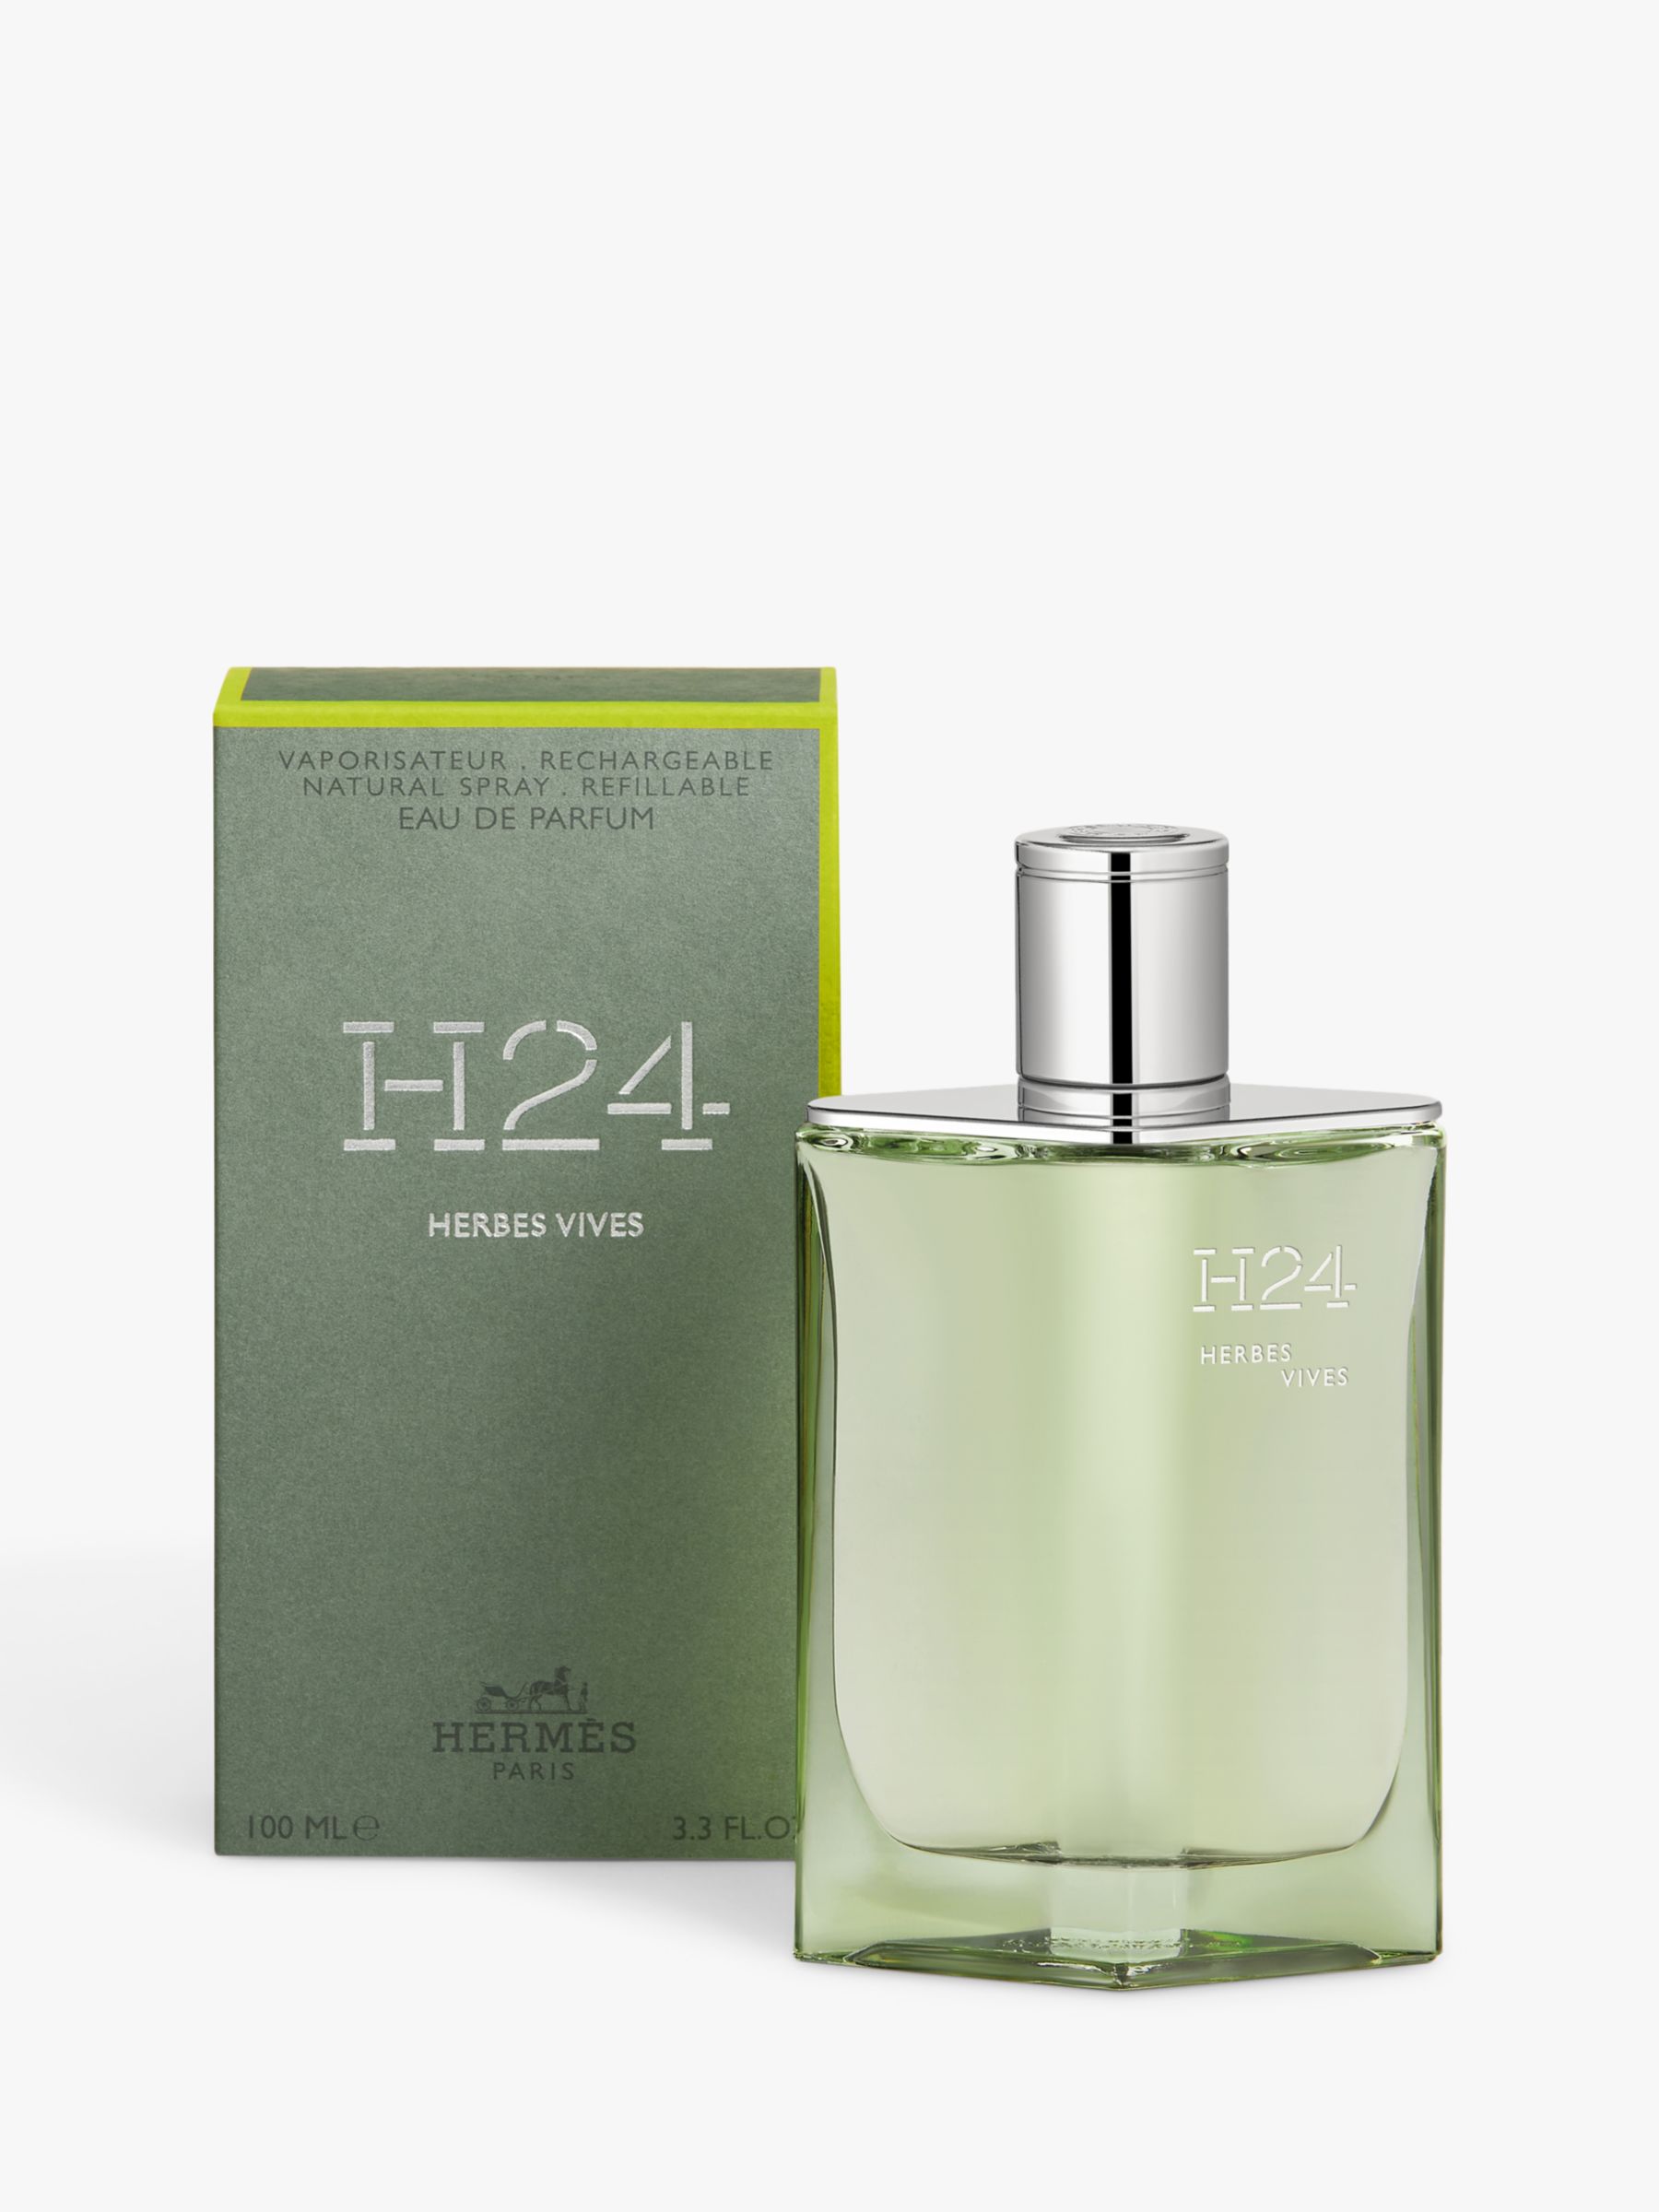 Hermès H24 Herbes Vives Eau de Parfum Refillable, 100ml